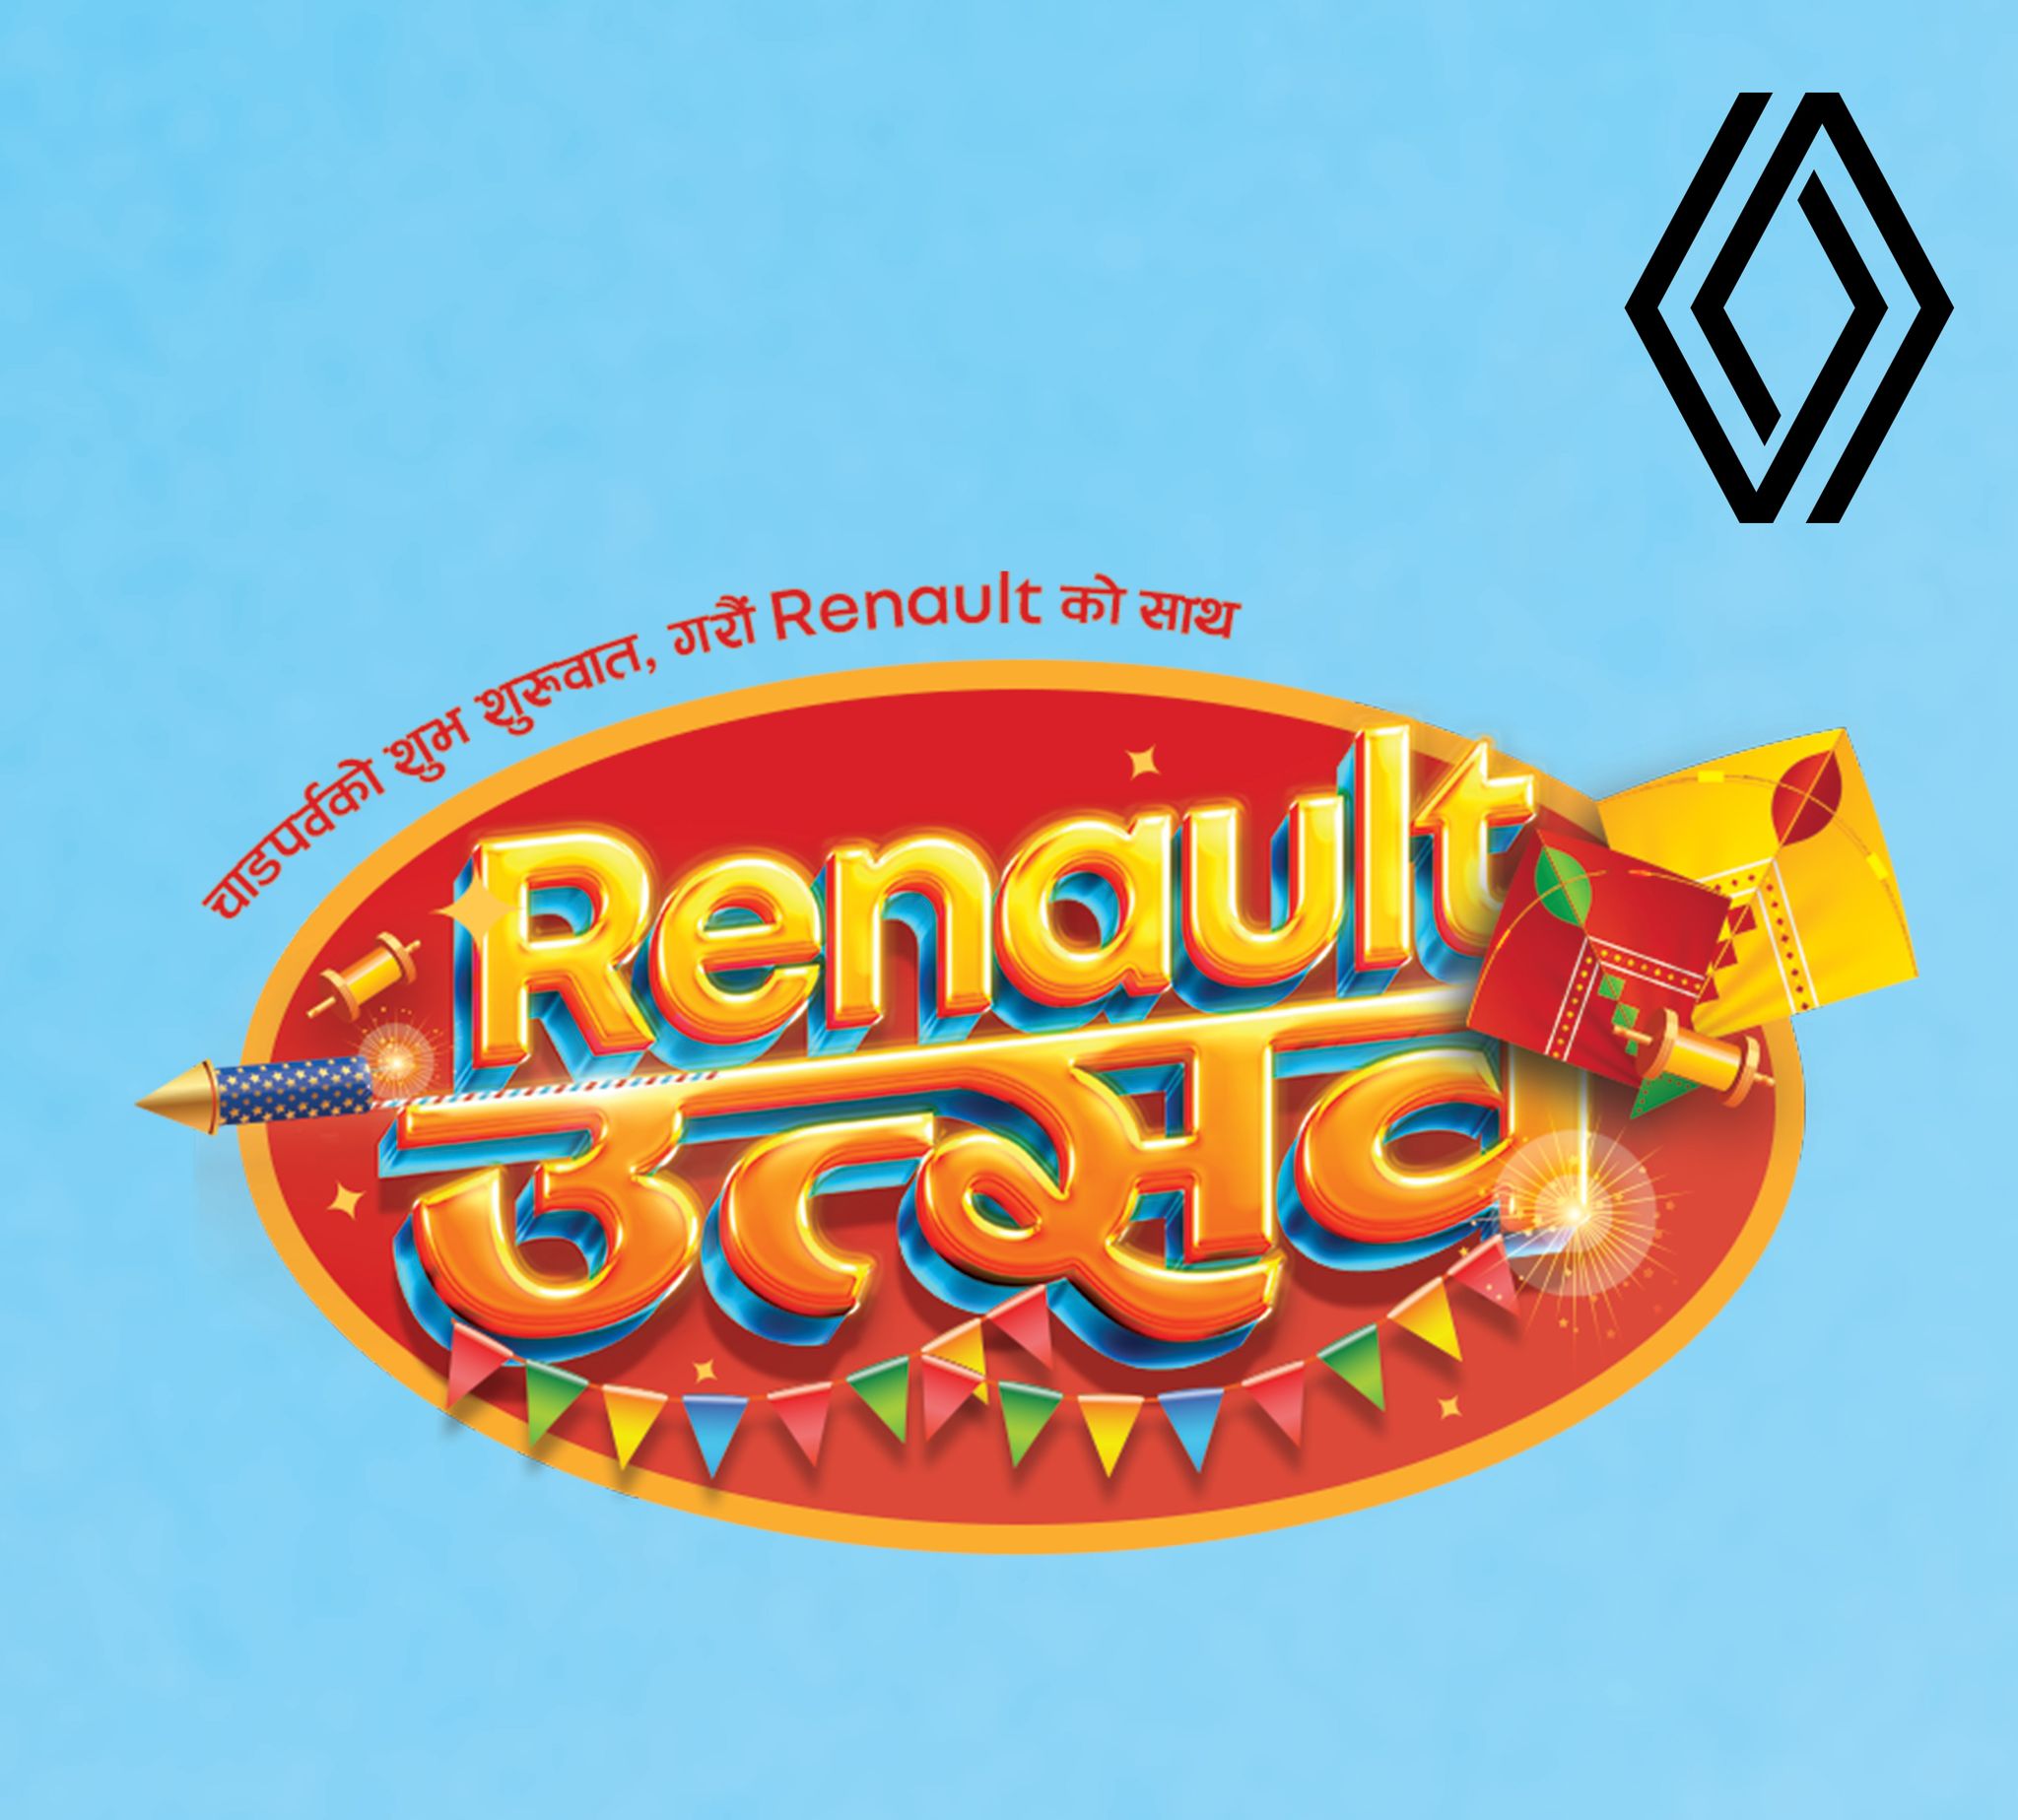 RENAULT launches Renault Utsav Dashain/Tihar Campaign